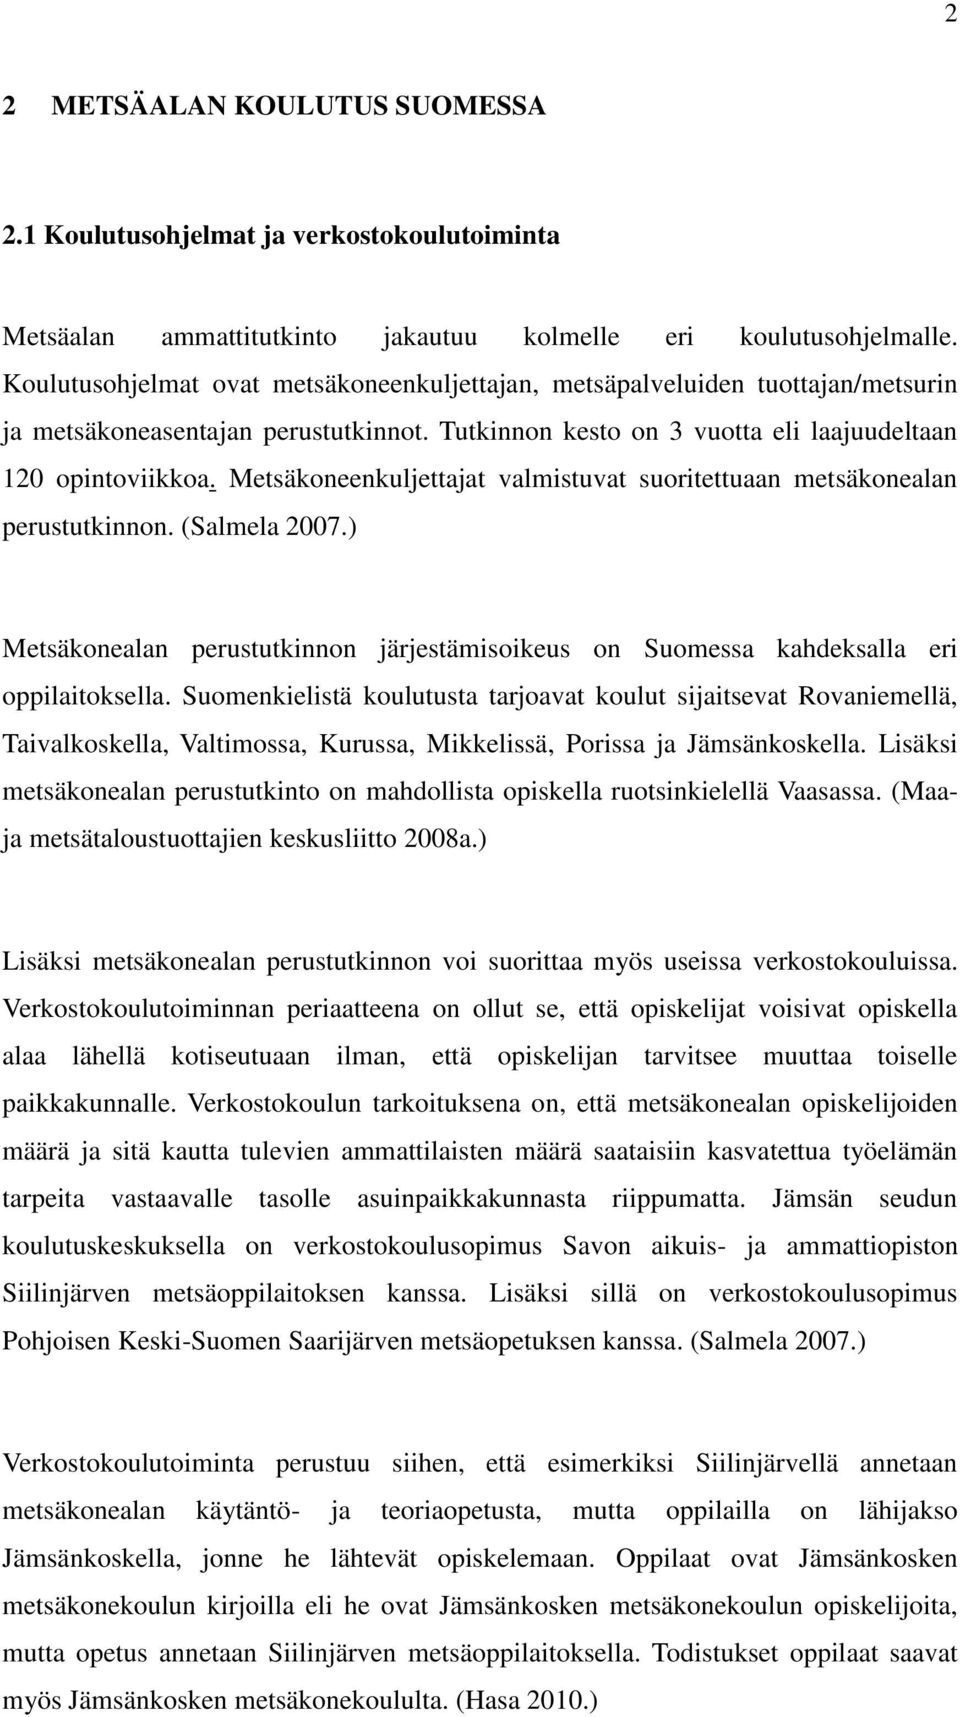 Metsäkoneenkuljettajat valmistuvat suoritettuaan metsäkonealan perustutkinnon. (Salmela 2007.) Metsäkonealan perustutkinnon järjestämisoikeus on Suomessa kahdeksalla eri oppilaitoksella.